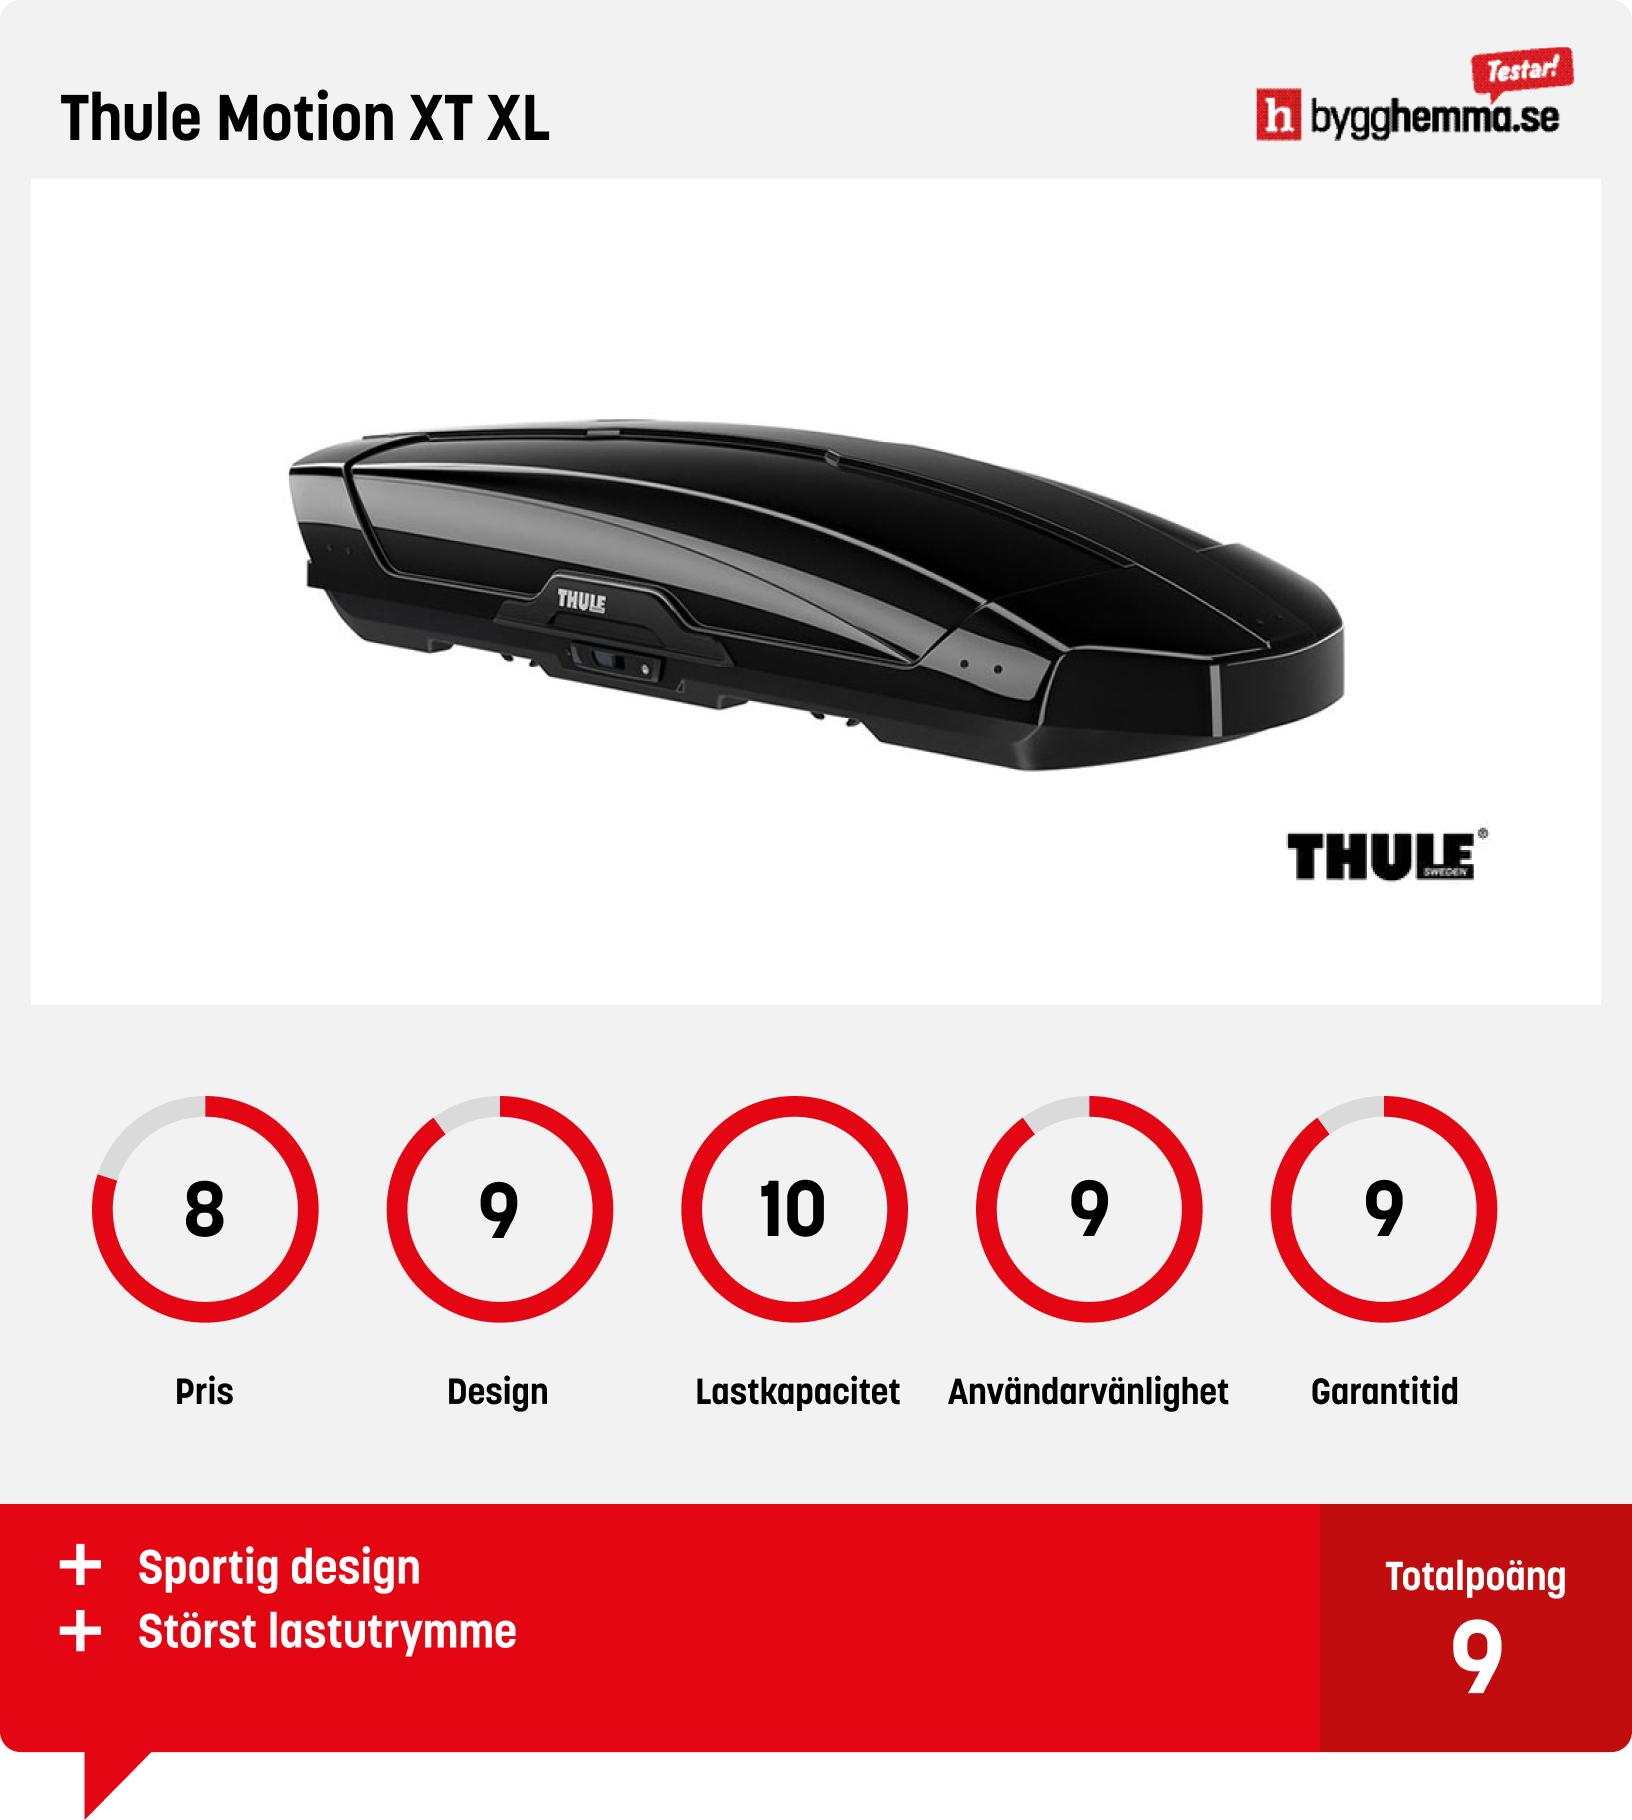 Bäst i test takbox Thule Motion XT XL